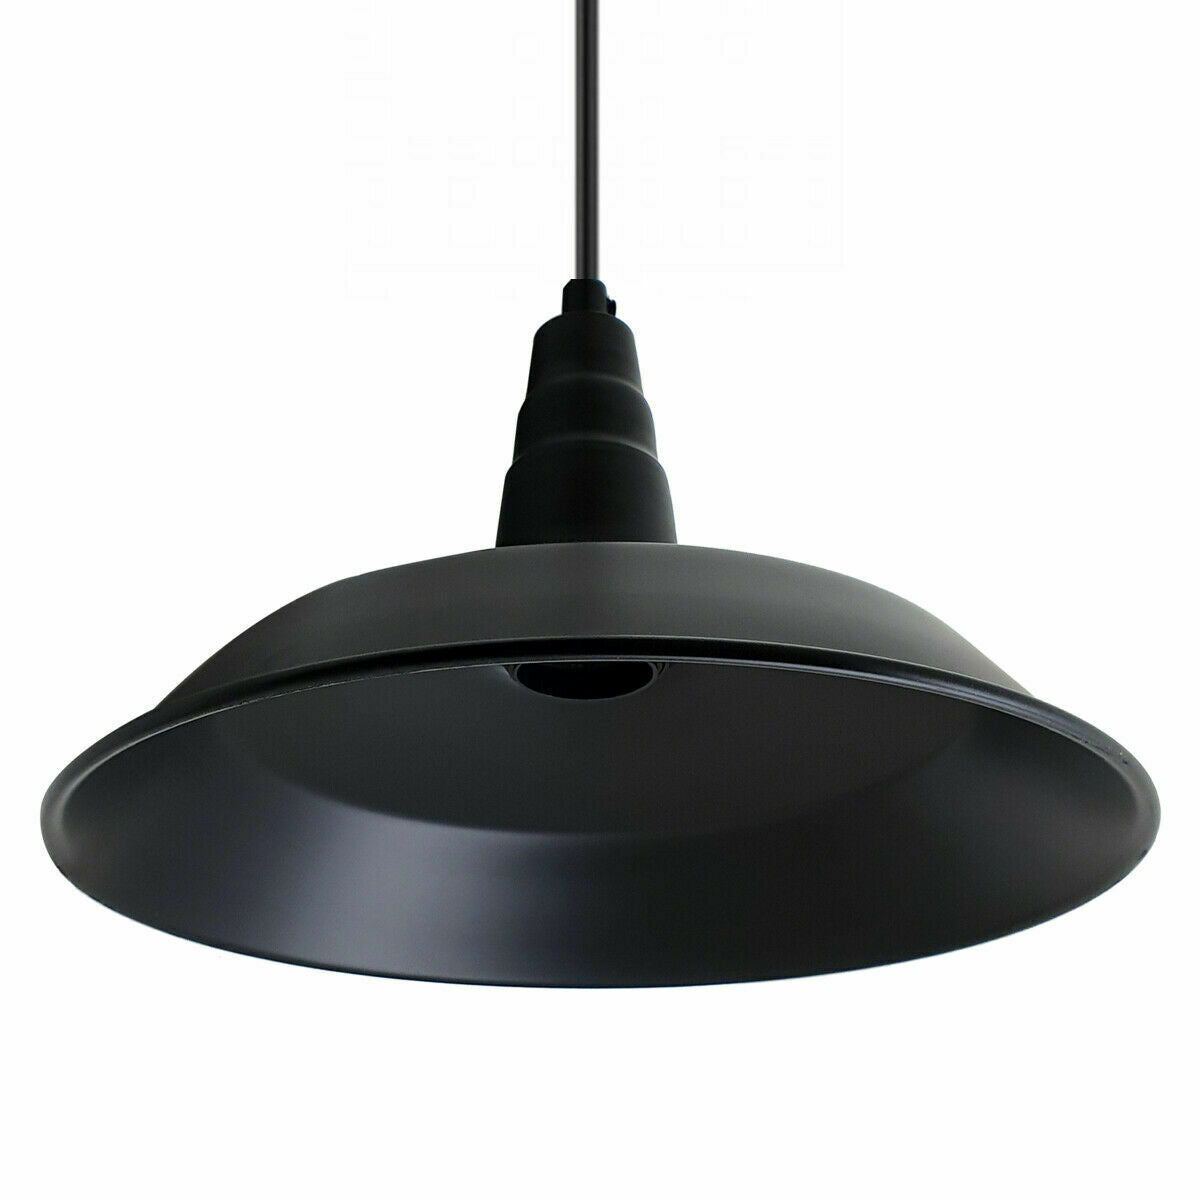 Industrial Vintage New Pendant Ceiling Light 36cm Bowl Shade Black E27Uk Holder~3723 - LEDSone UK Ltd